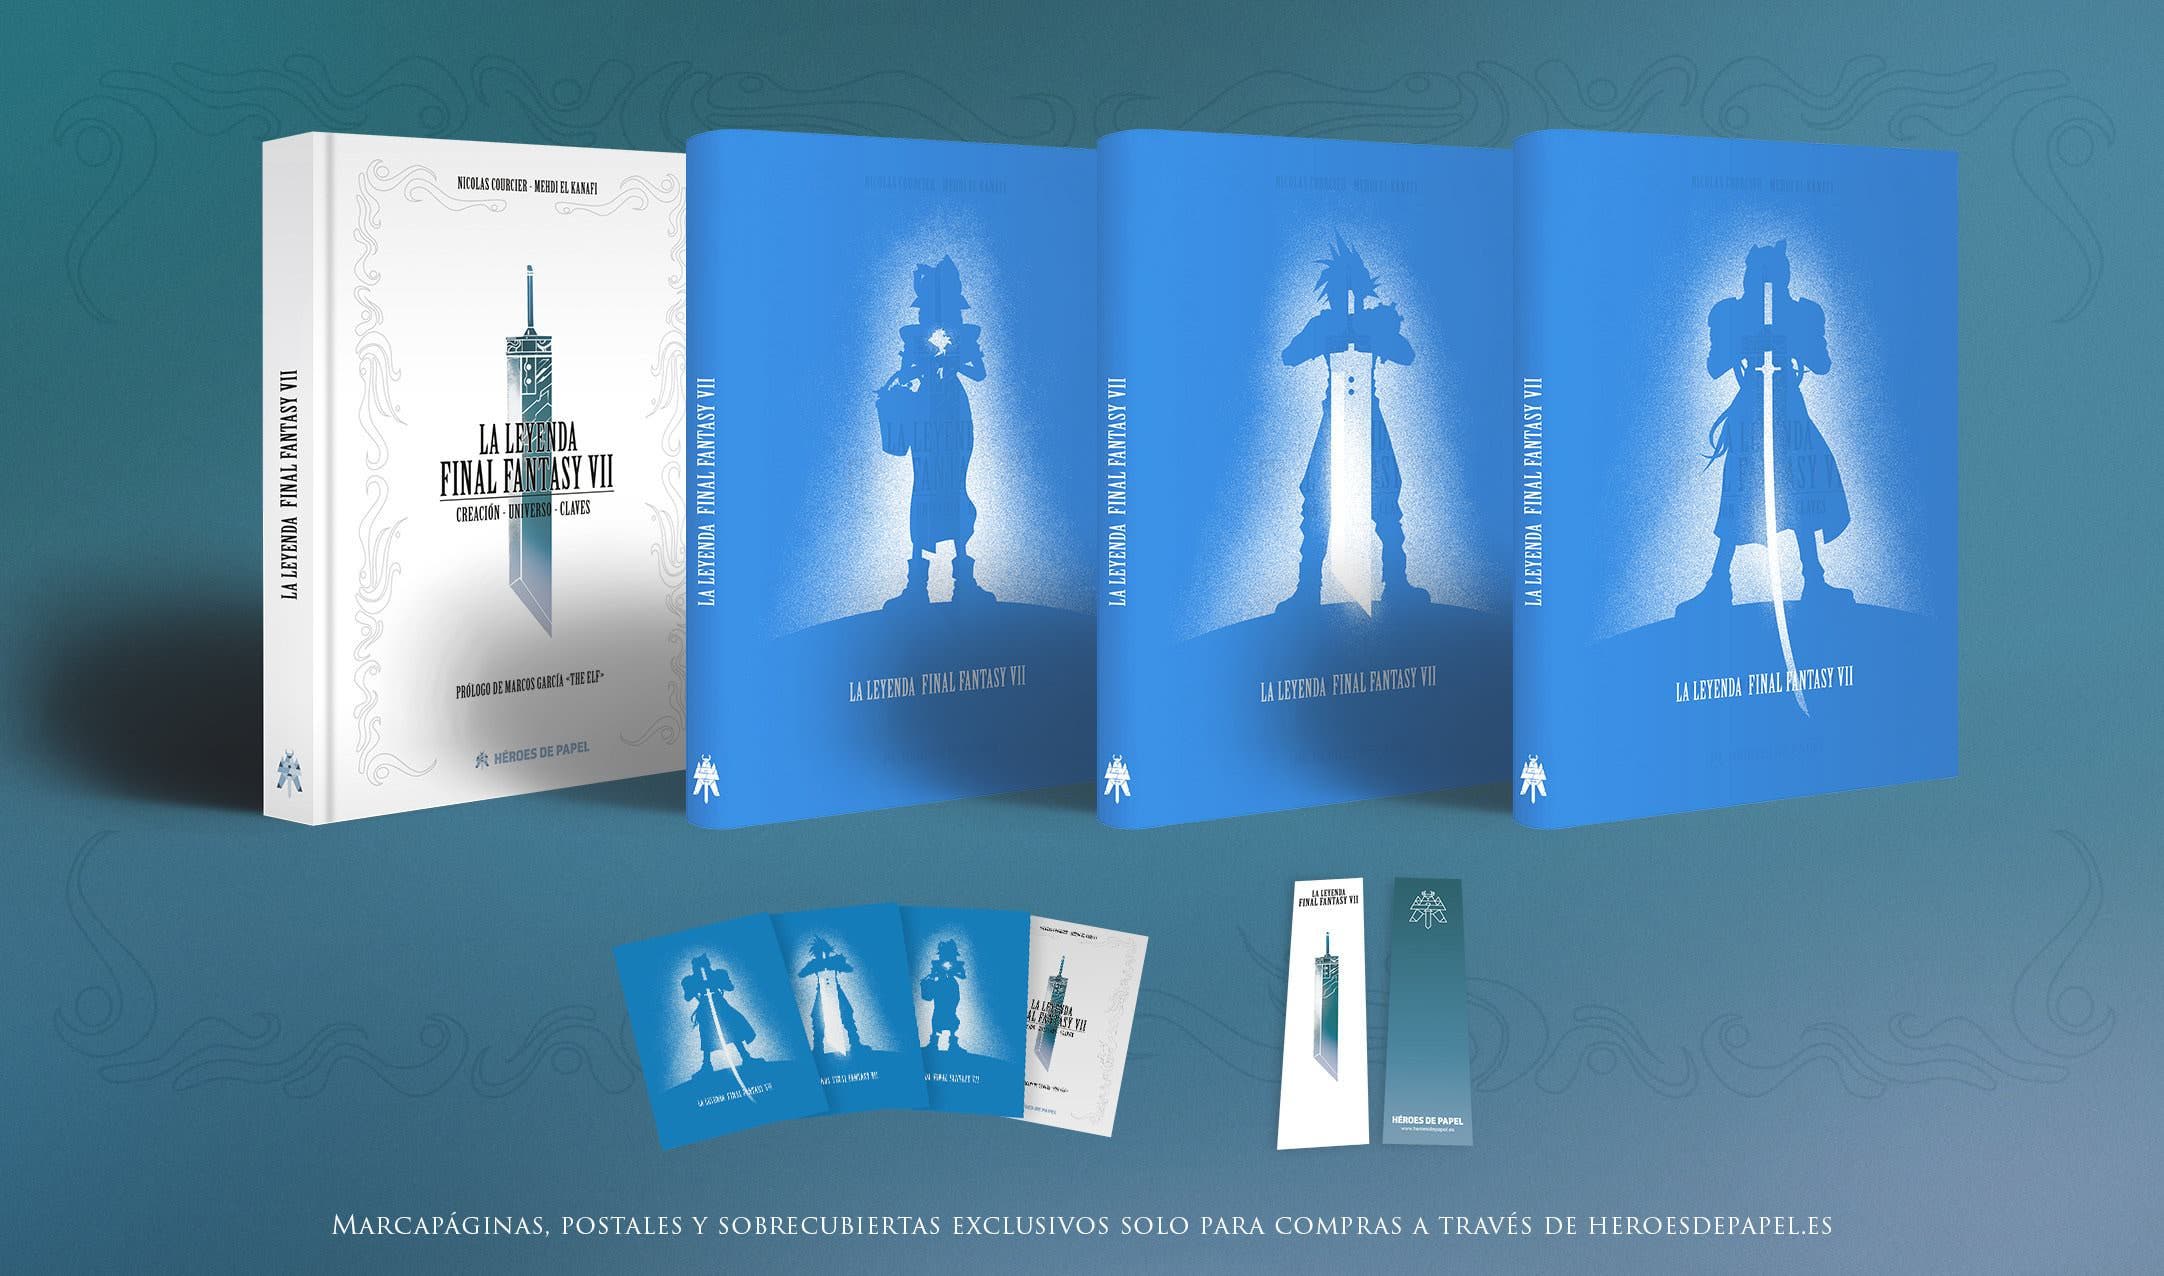 El libro La Leyenda Final Fantasy VII regresa con una cuarta edición completamente actualizada